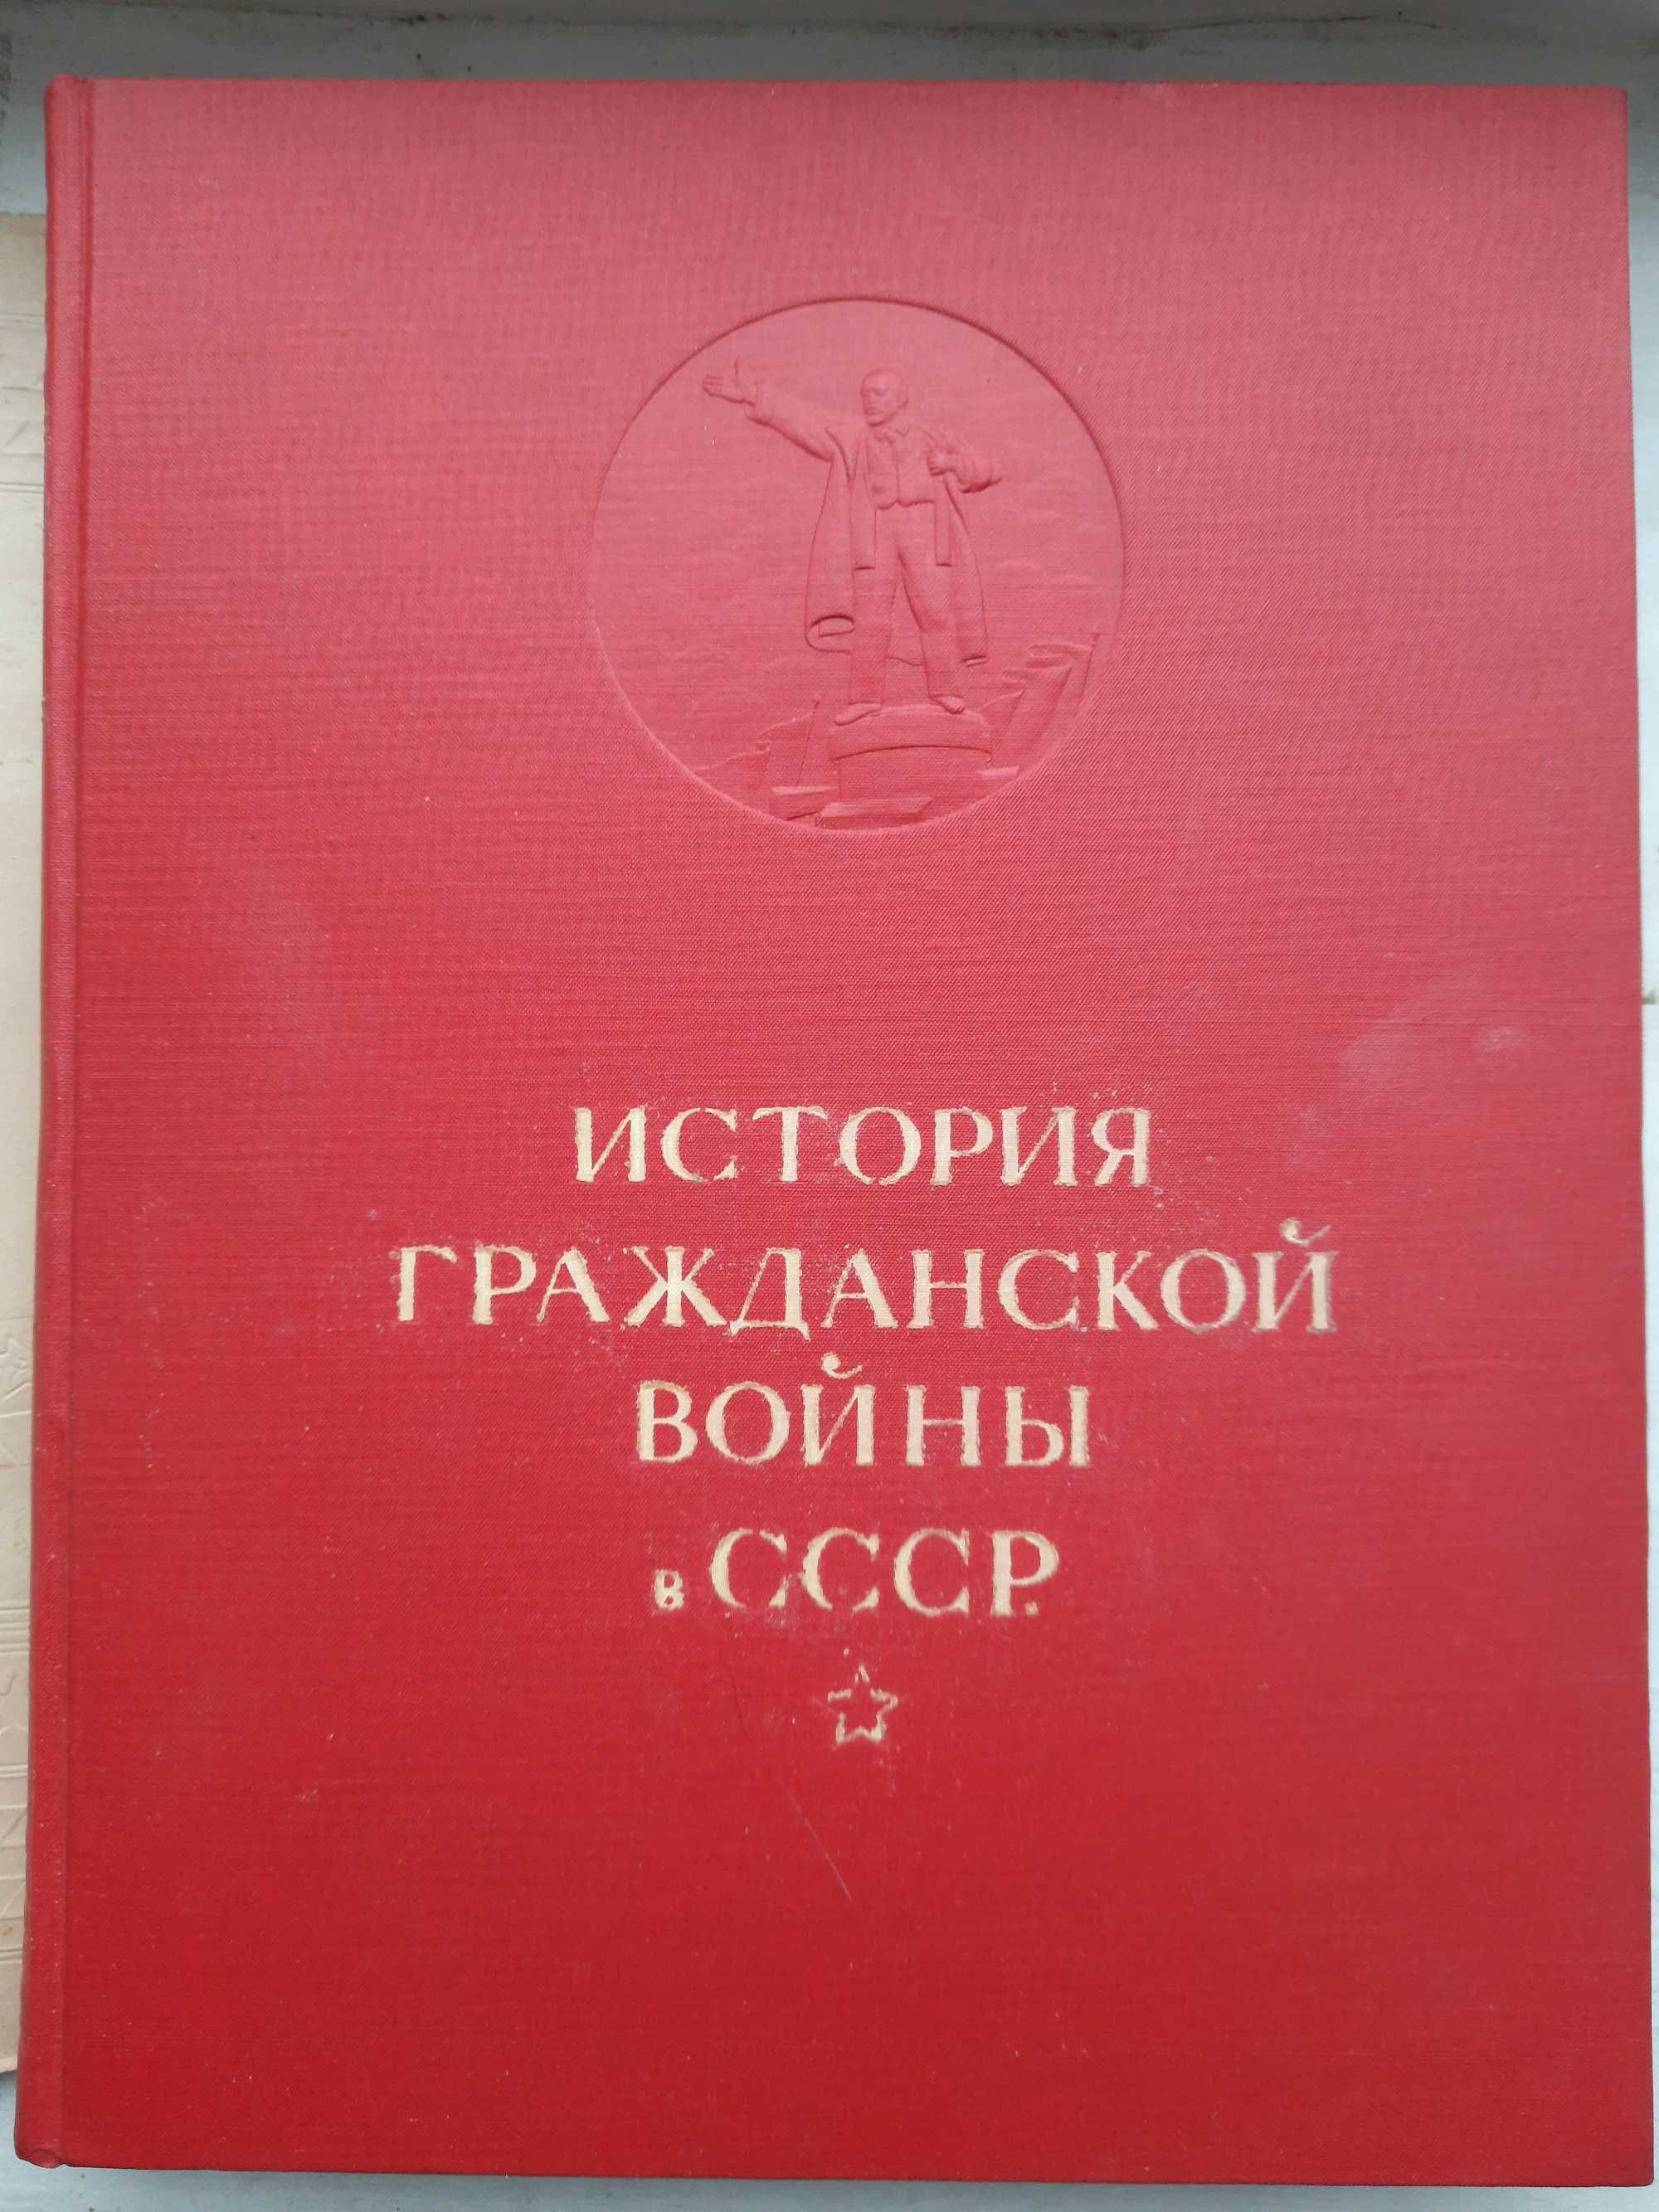 Книга "История гражданской войны в СССР", 1935 год.